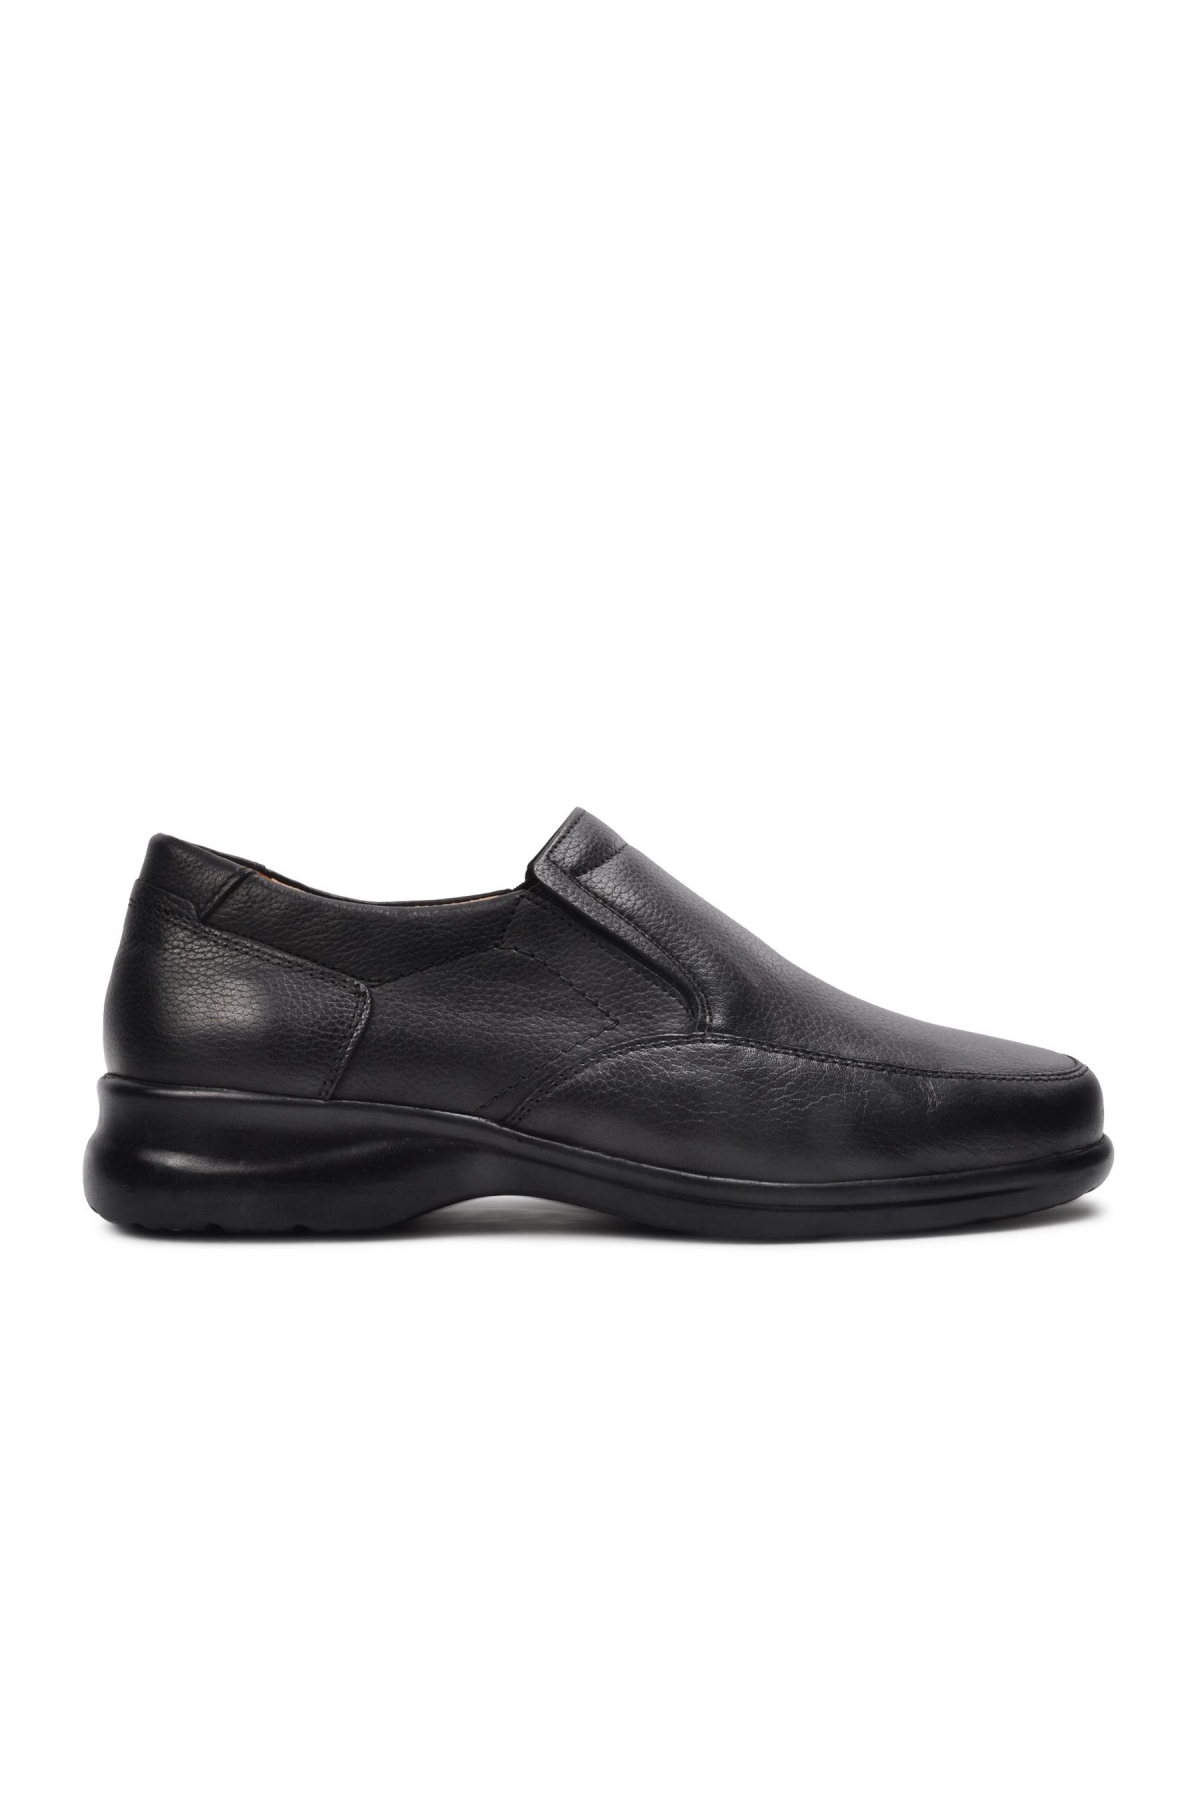 Flo 21204-1 Siyah Hakiki Deri Erkek Günlük Ayakkabı. 1